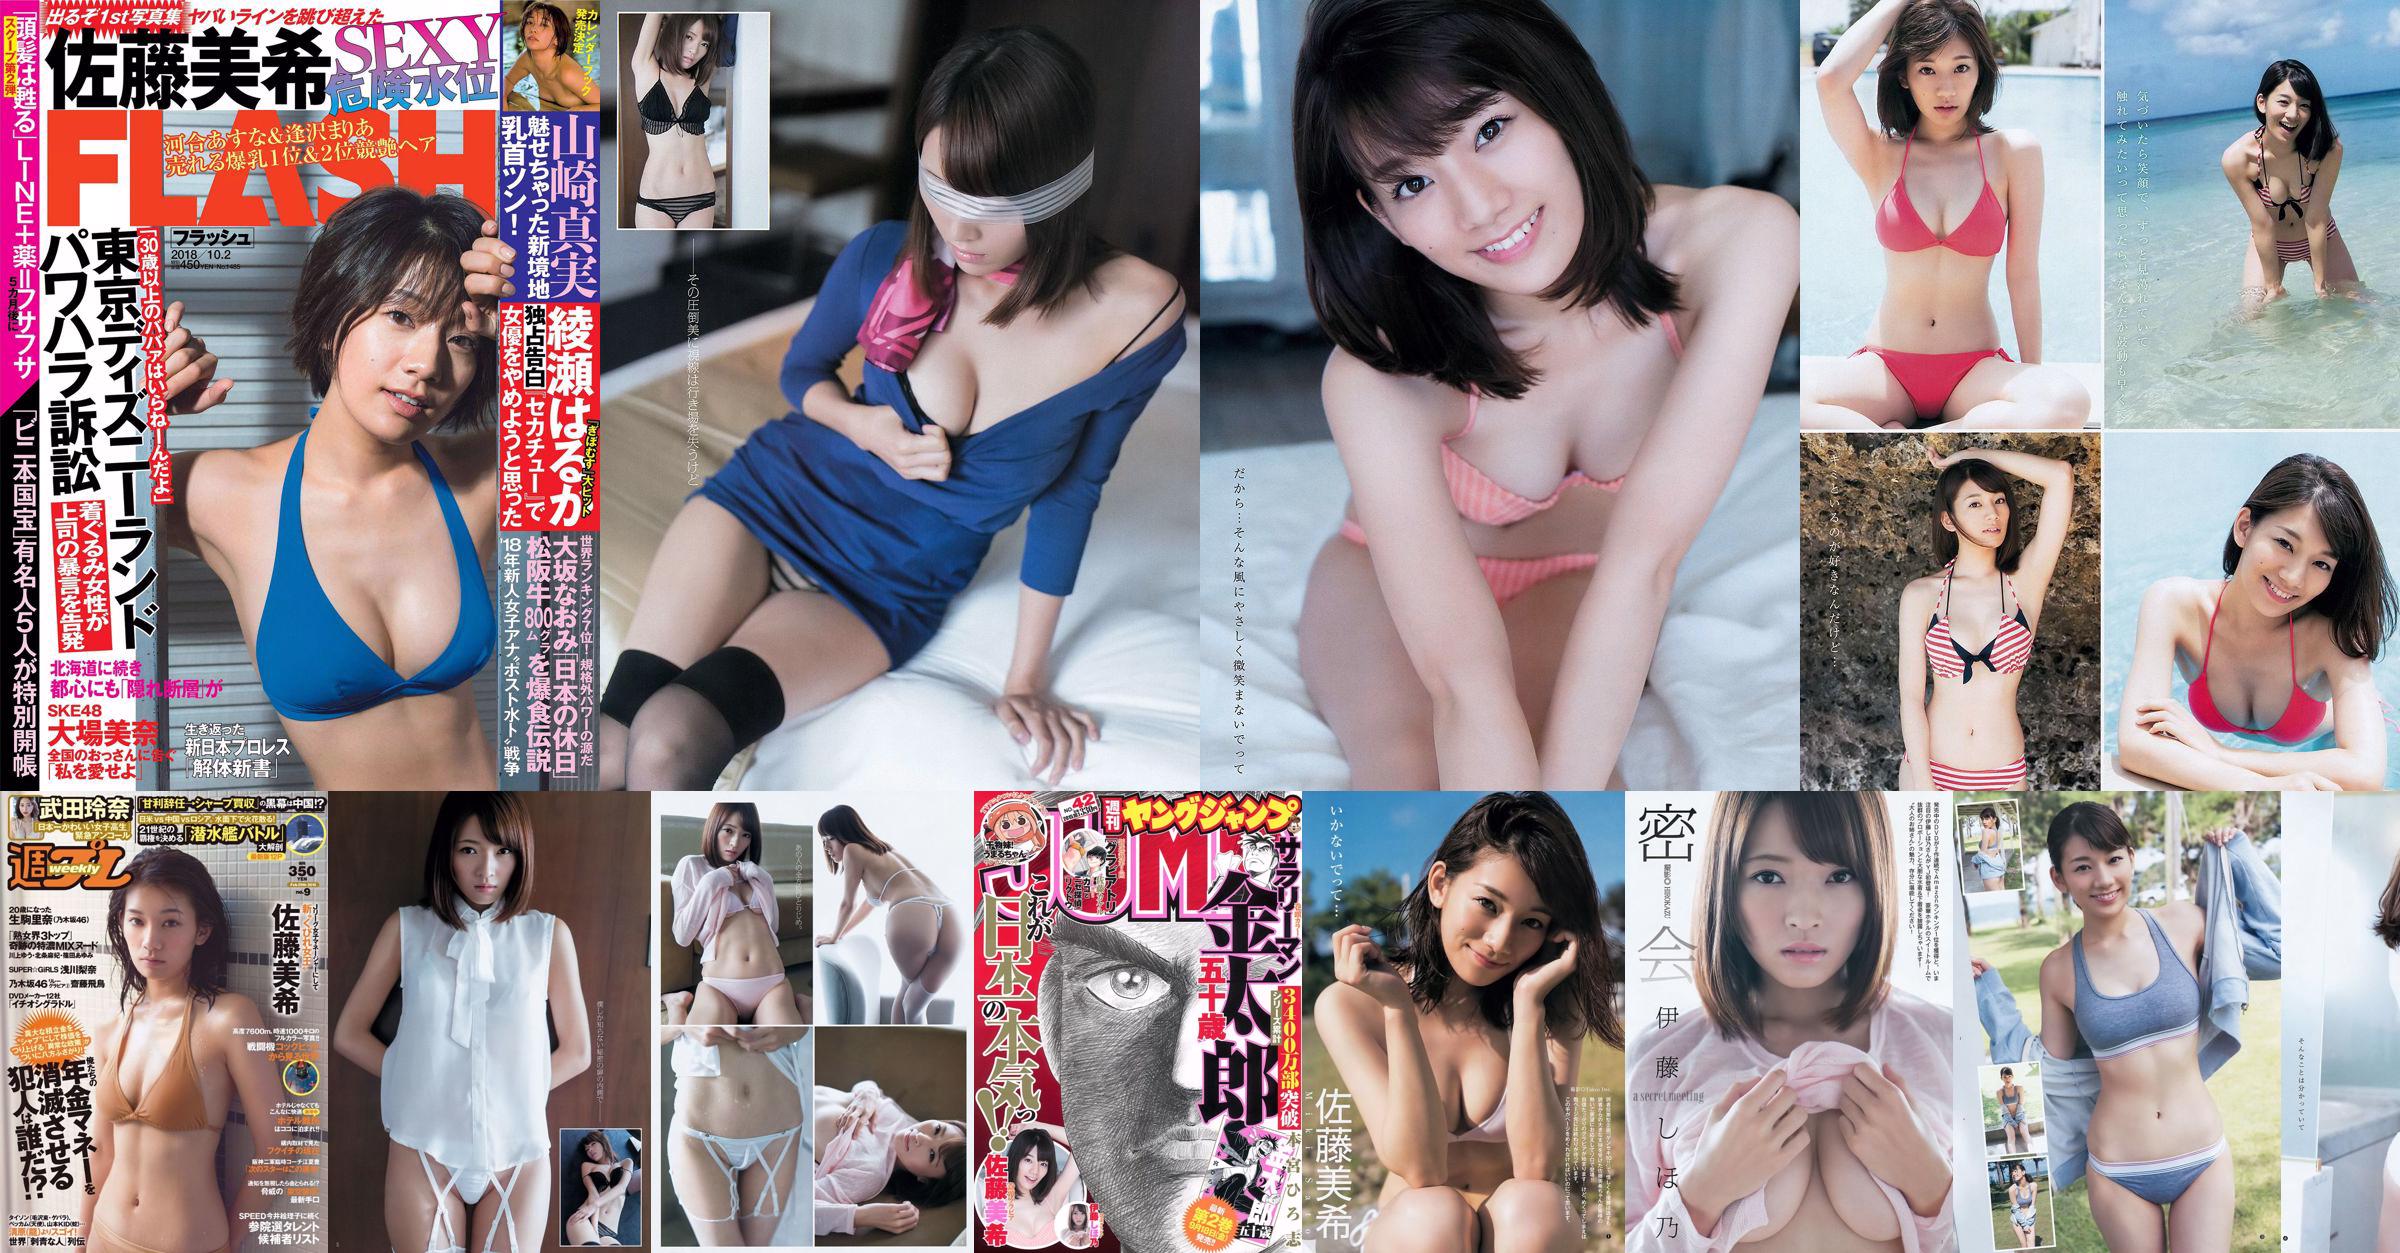 Sato Maki Ito Kayano [Weekly Young Jump] Magazine photo n ° 42 2015 No.e2c55a Page 3